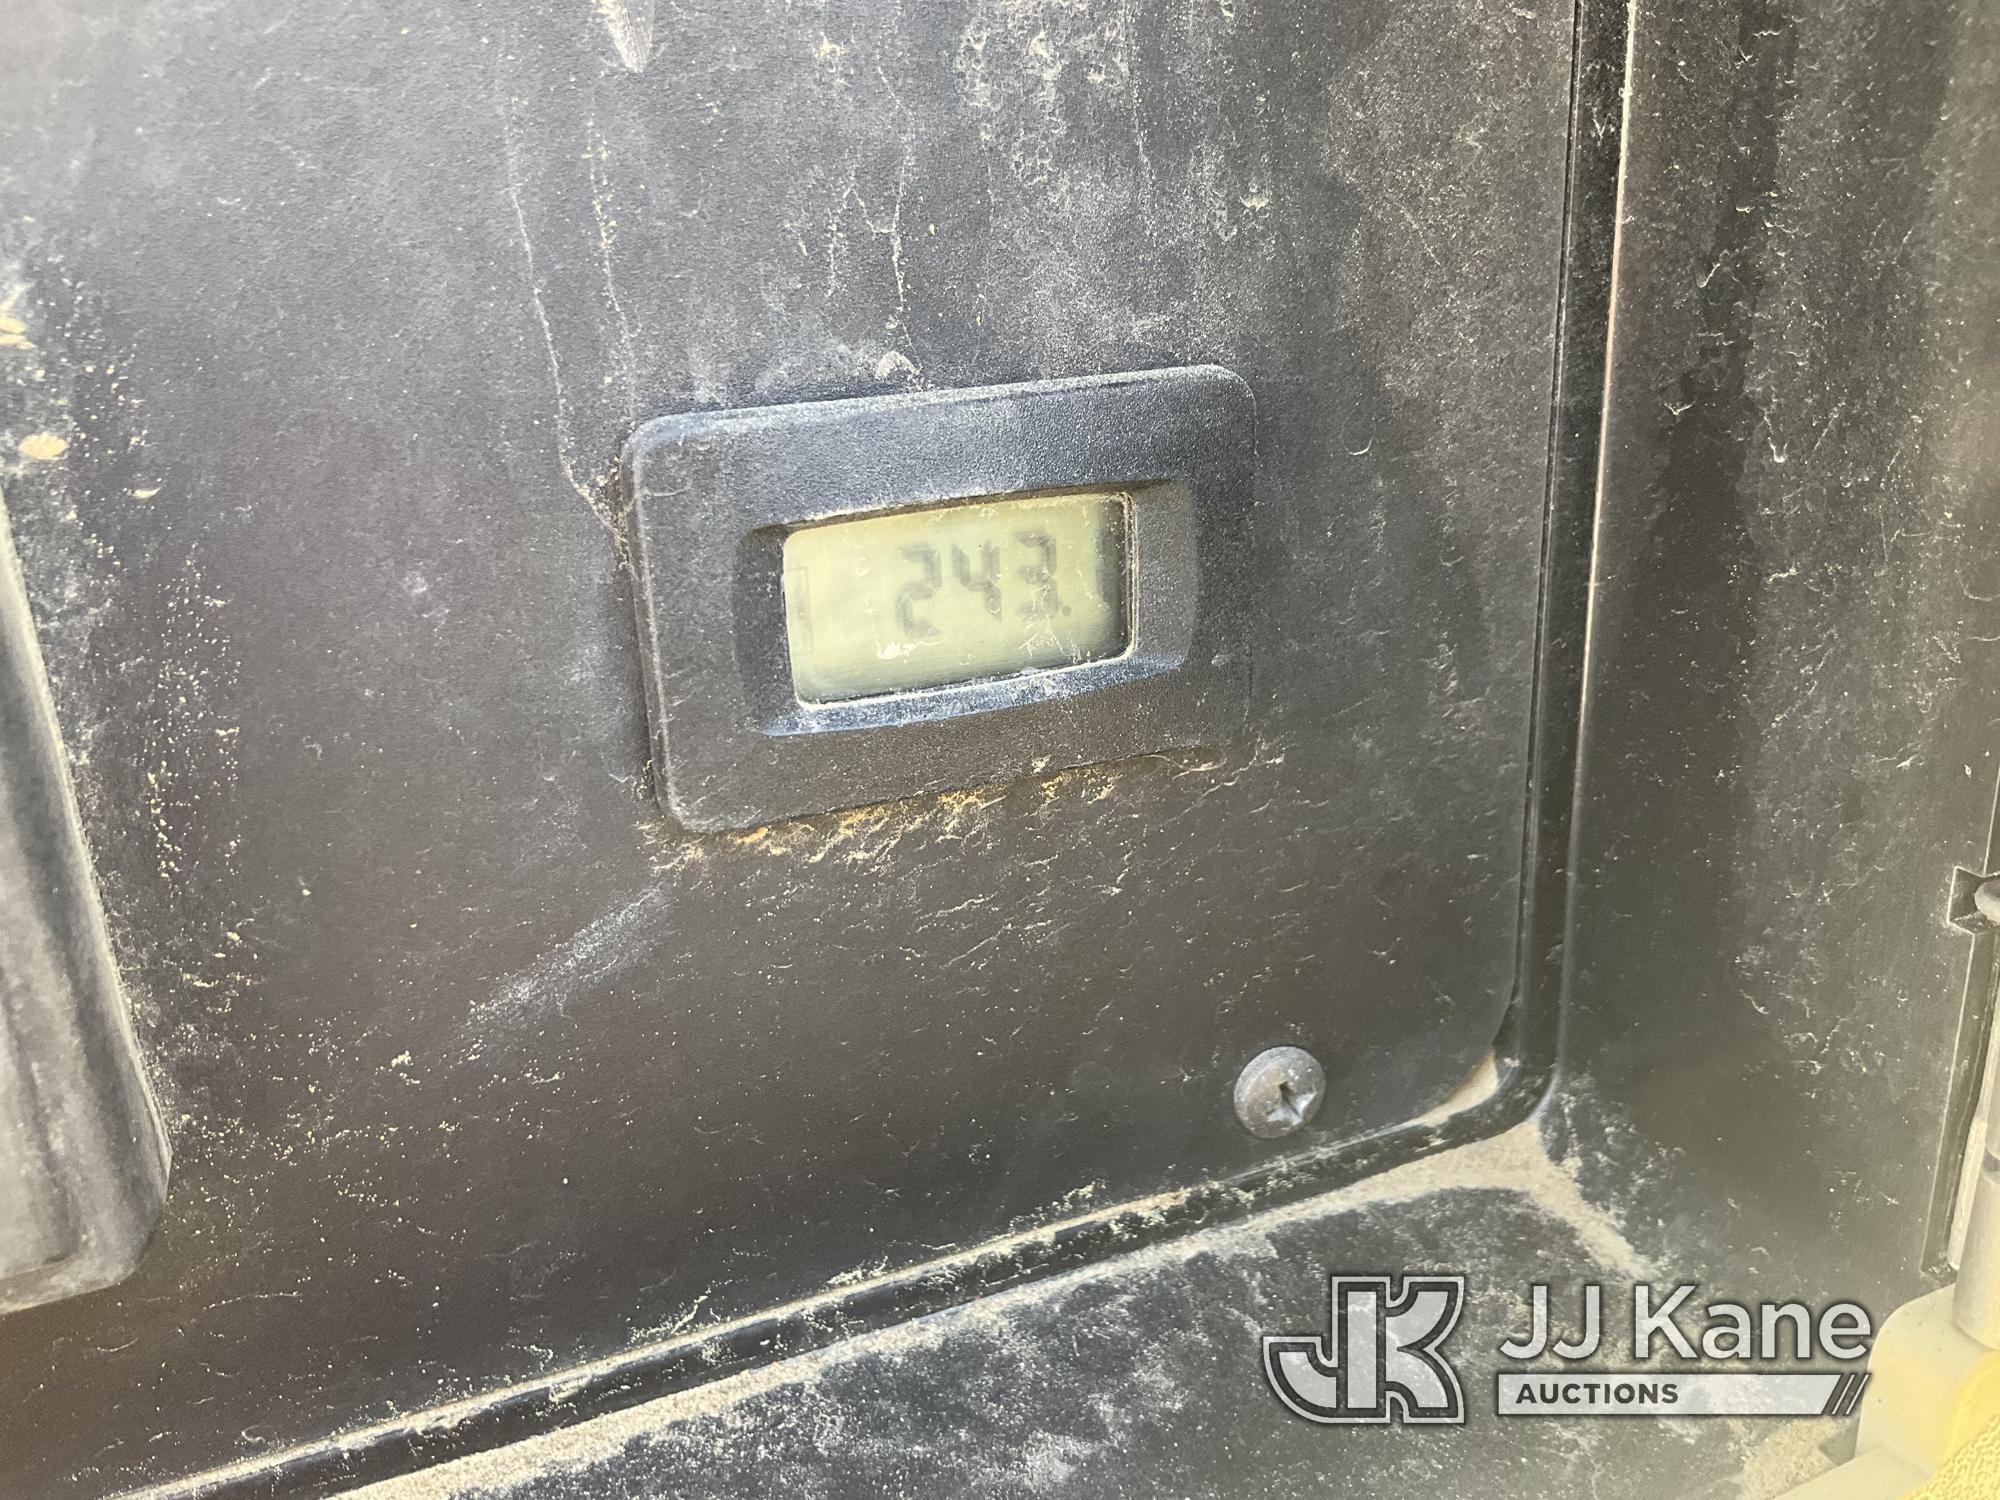 (Jurupa Valley, CA) 2019 DOOSAN P185WD0-T4F Portable Air Compressor Not Running